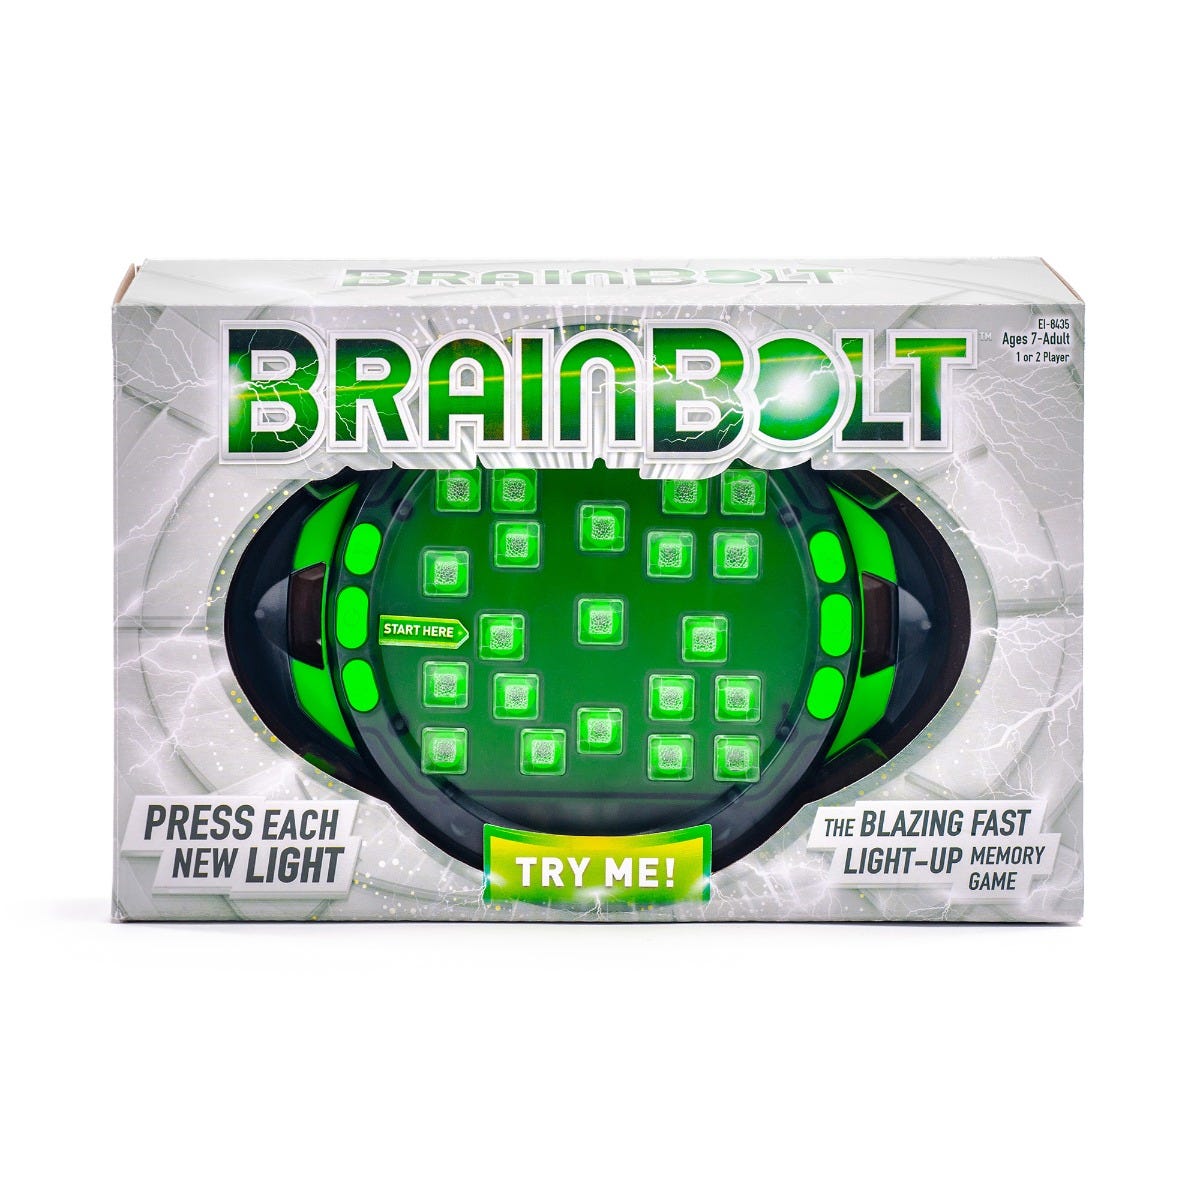 BrainBolt®